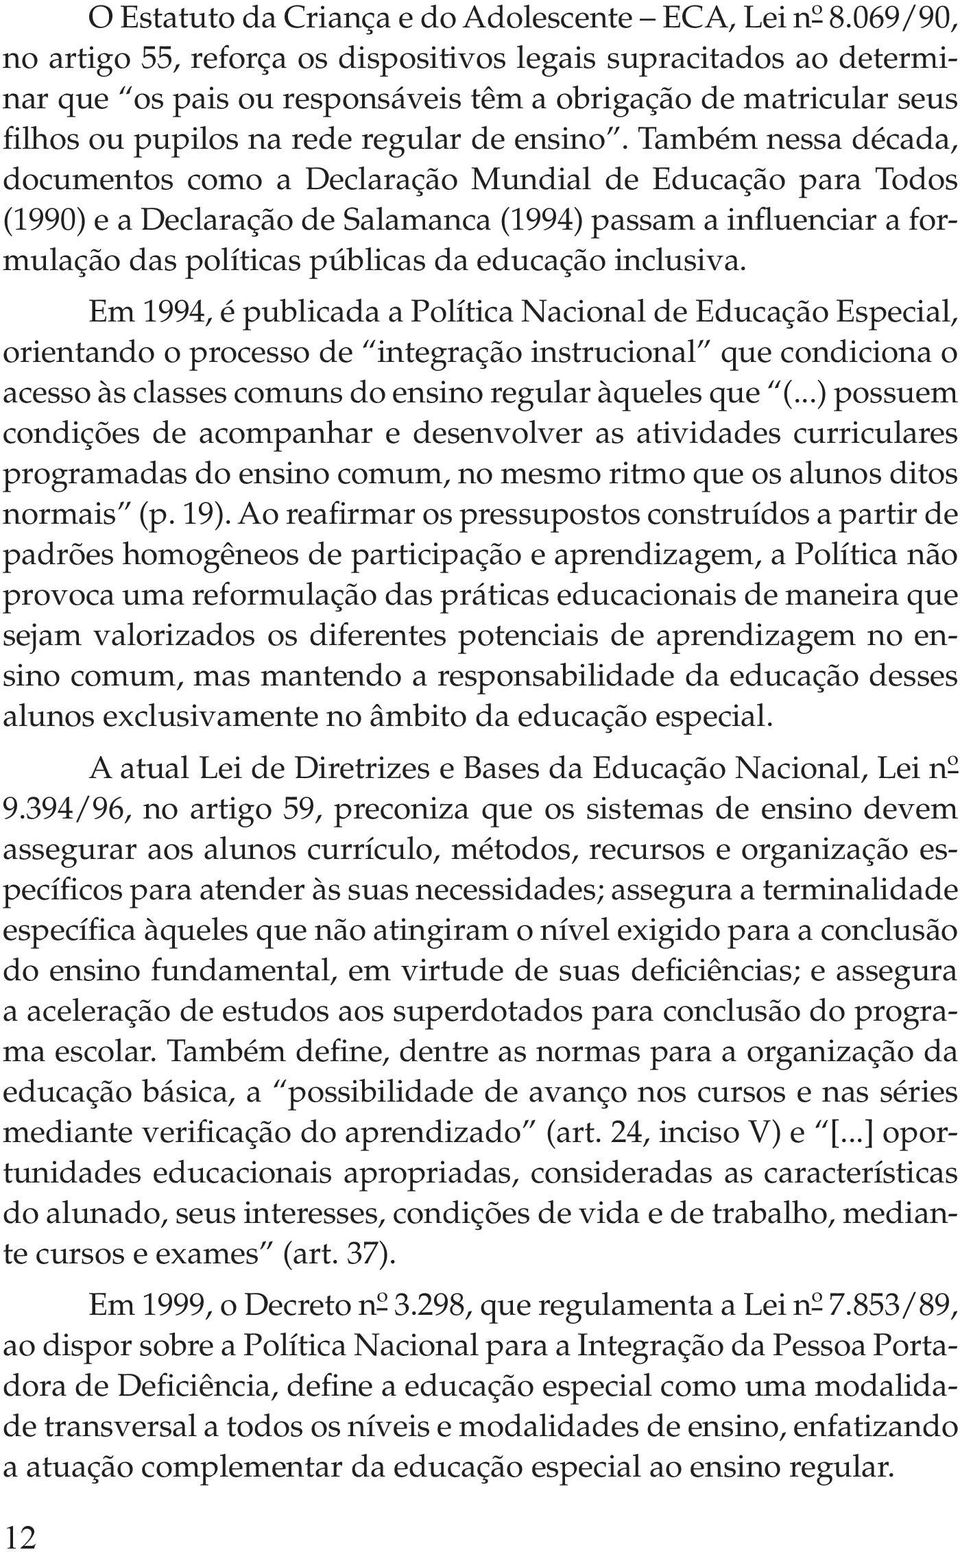 Também nessa década, documentos como a Declaração Mundial de Educação para Todos (1990) e a Declaração de Salamanca (1994) passam a influenciar a formulação das políticas públicas da educação